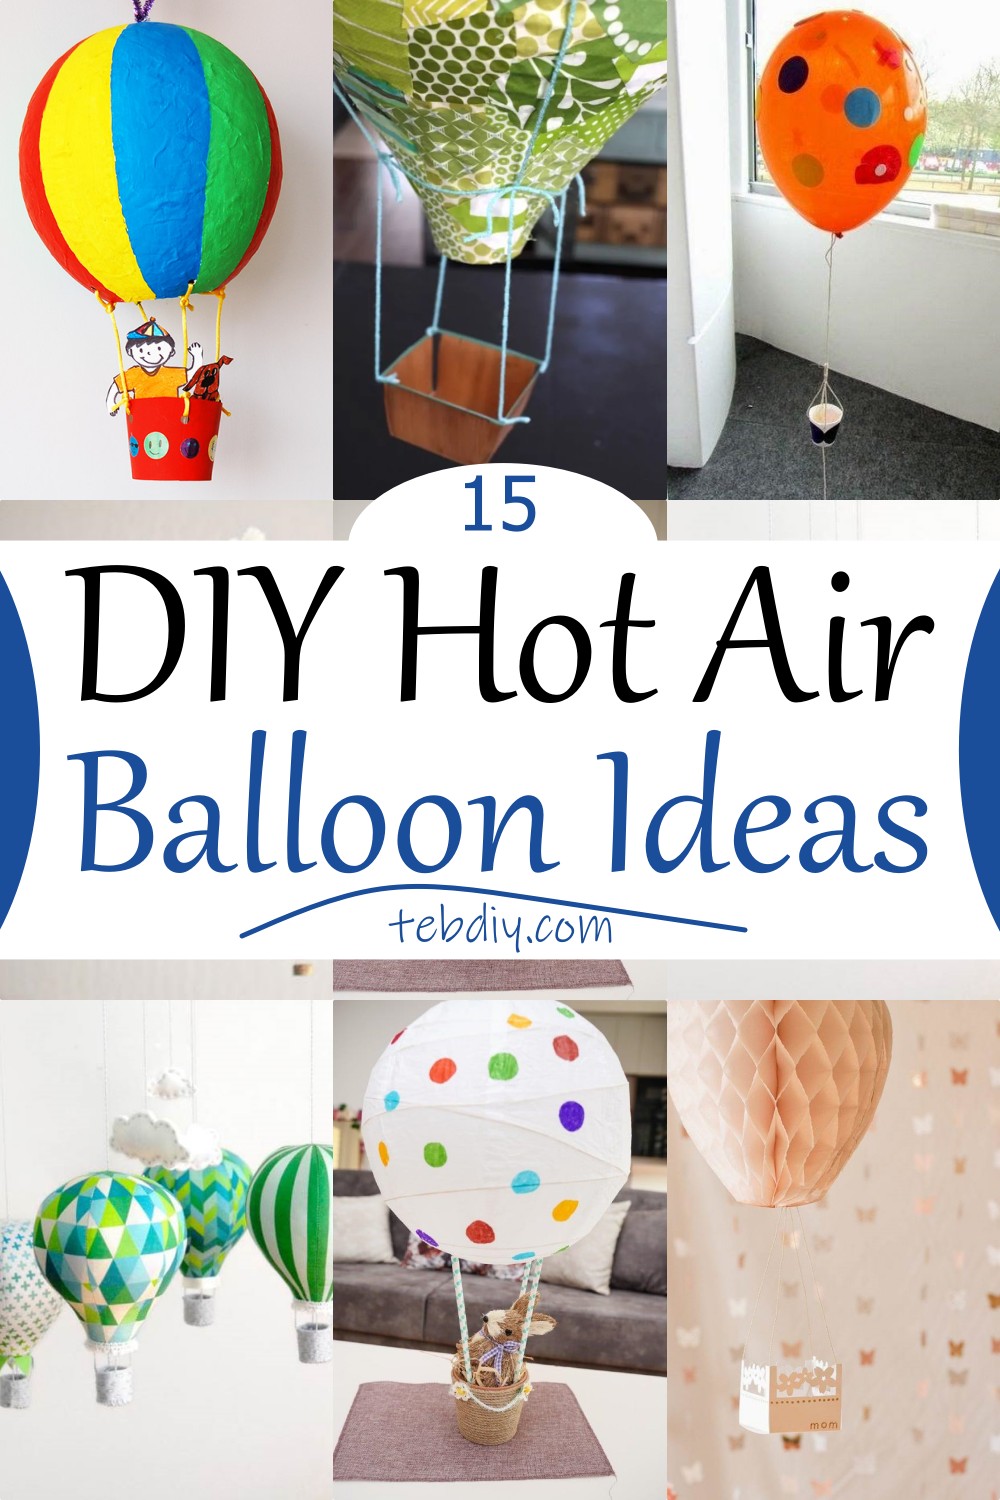 15 DIY Hot Air Balloon Ideas